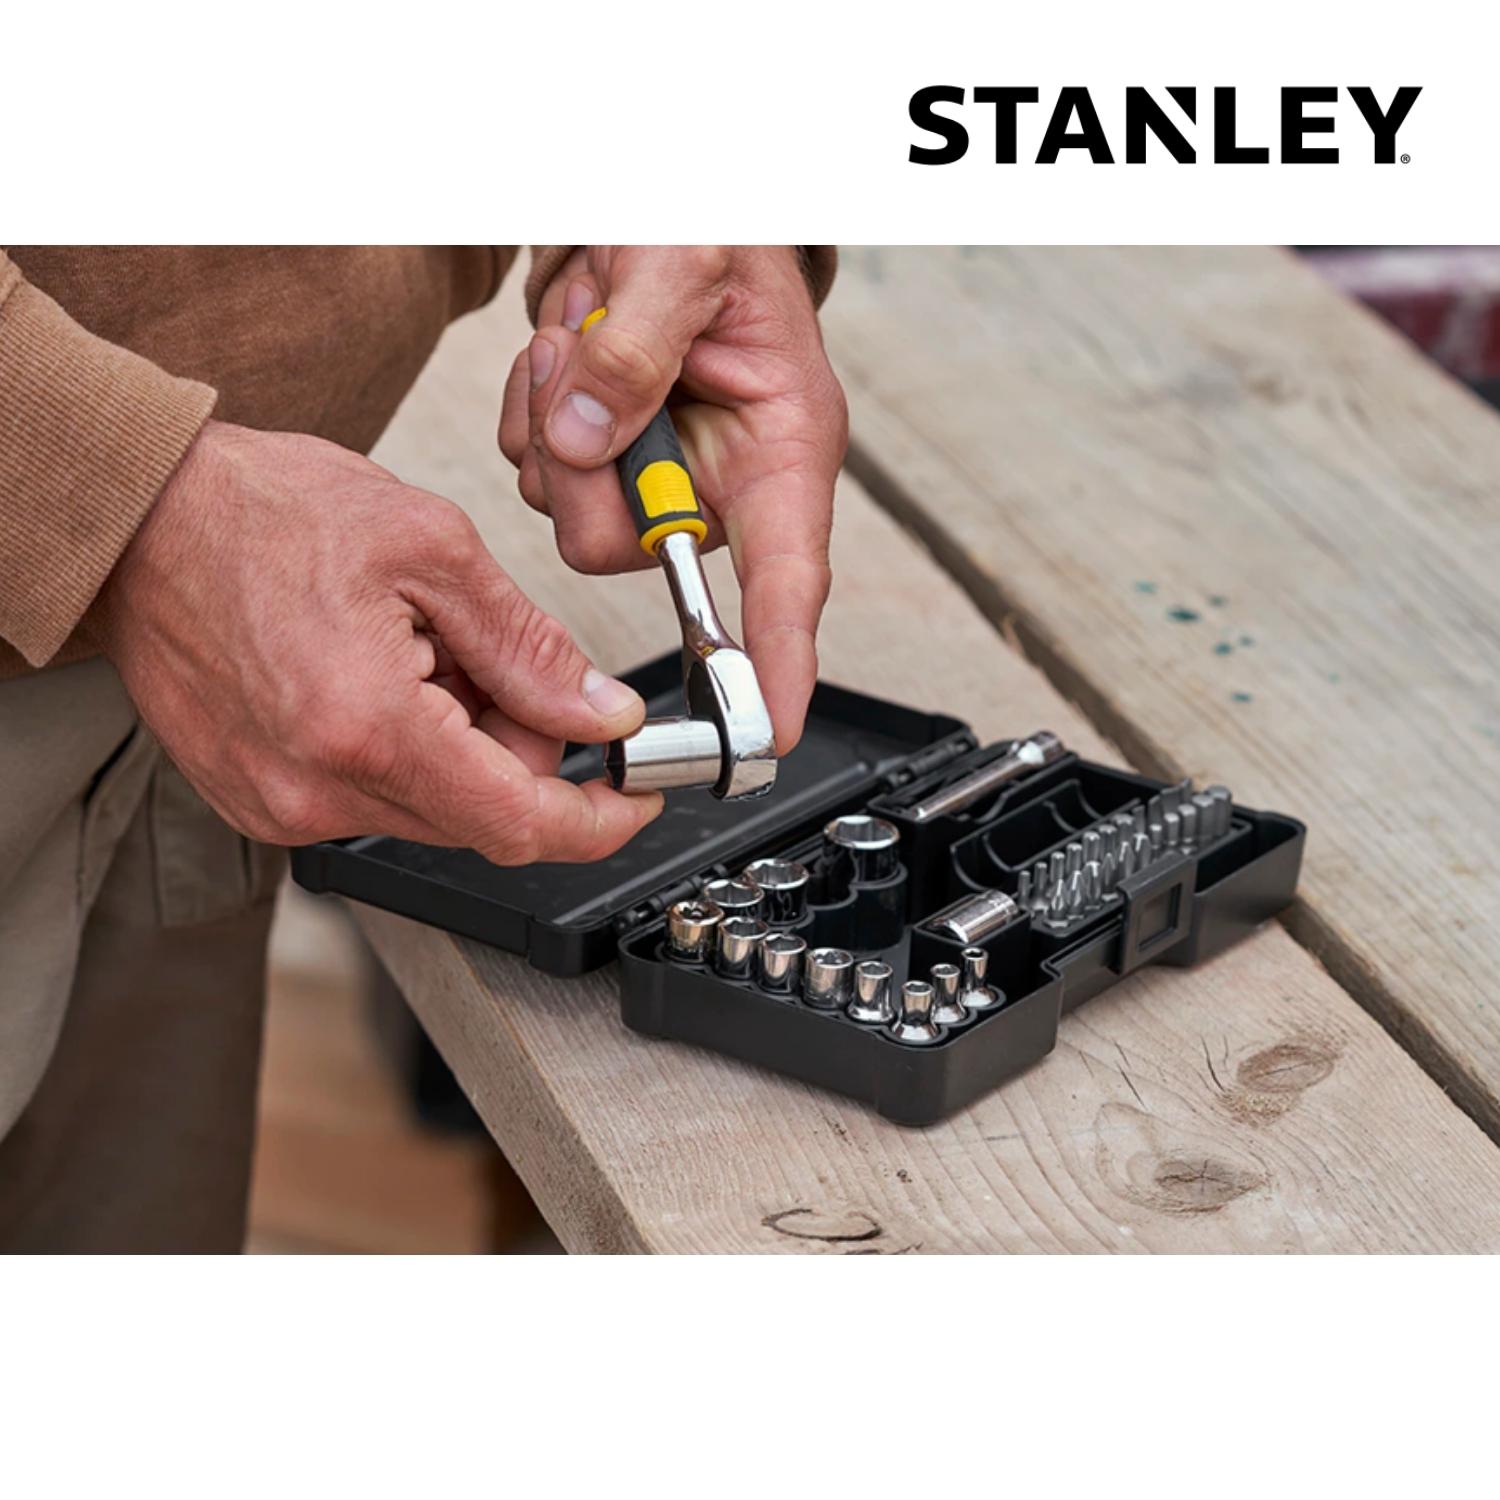 Stanley Set Compacto de 37 Peças - 37 Peças - Limitado ao Stock Existente